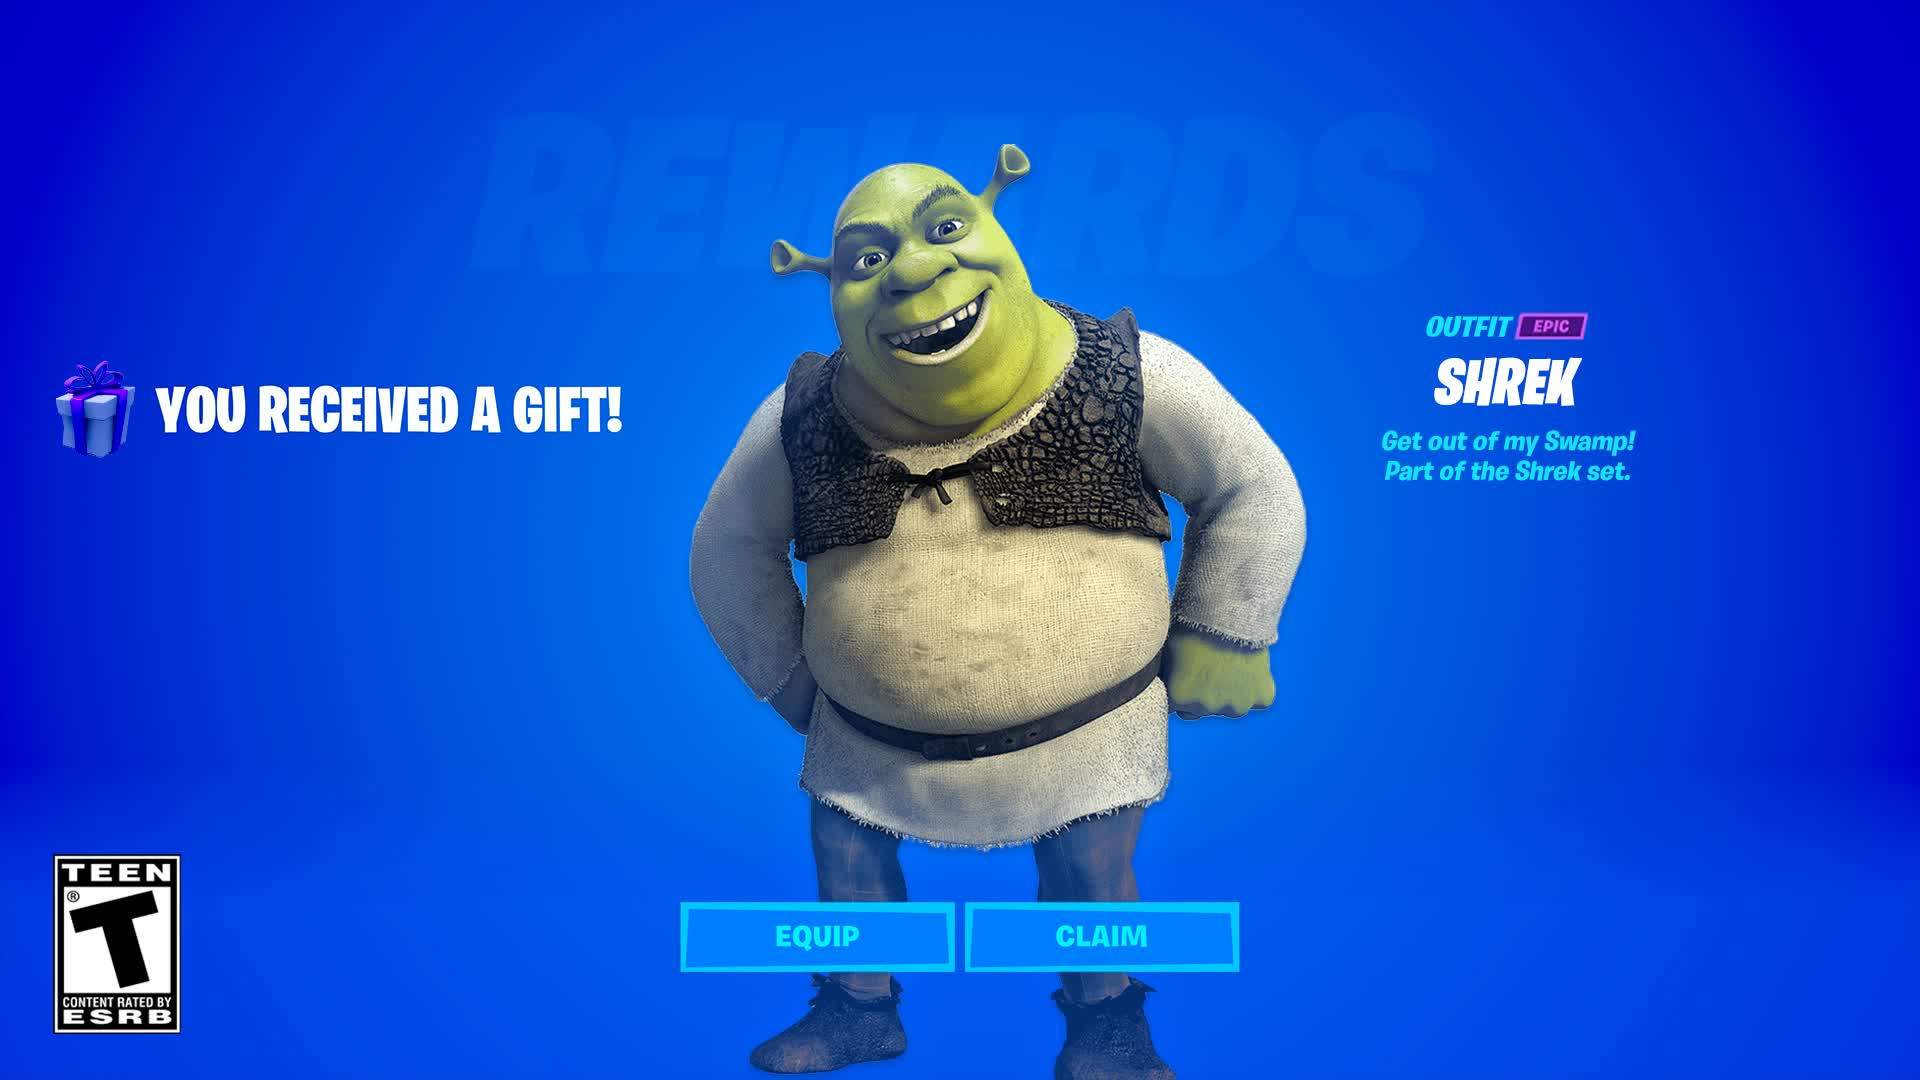 The Shrek - FREE FOR ALL